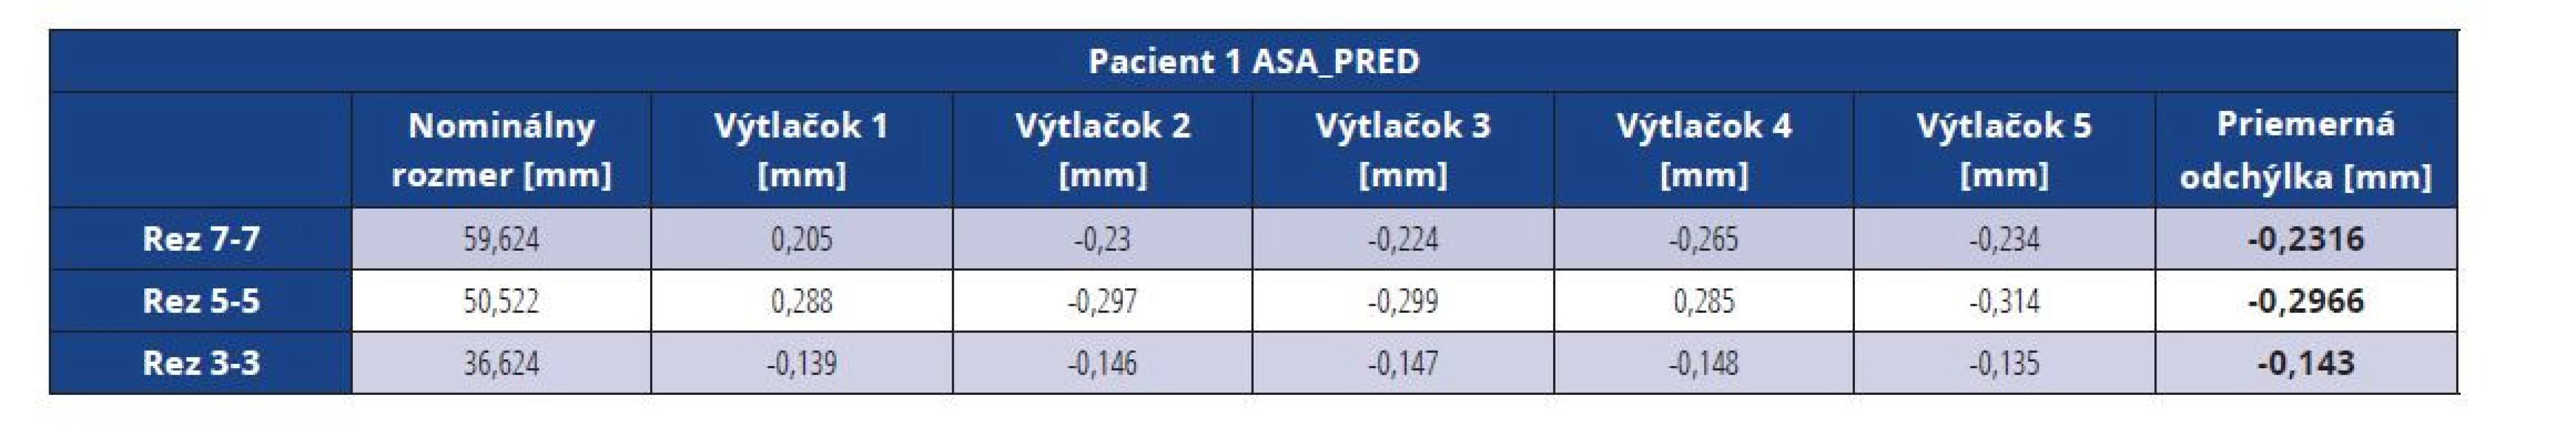 Rozmerové odchýlky master modelu pacienta 1 vytlačeného z materiálu ASA pred vákuovaním<br>
Tab. 3 Dimensional deviations of the ASA master model before vacuuming (patient 1)